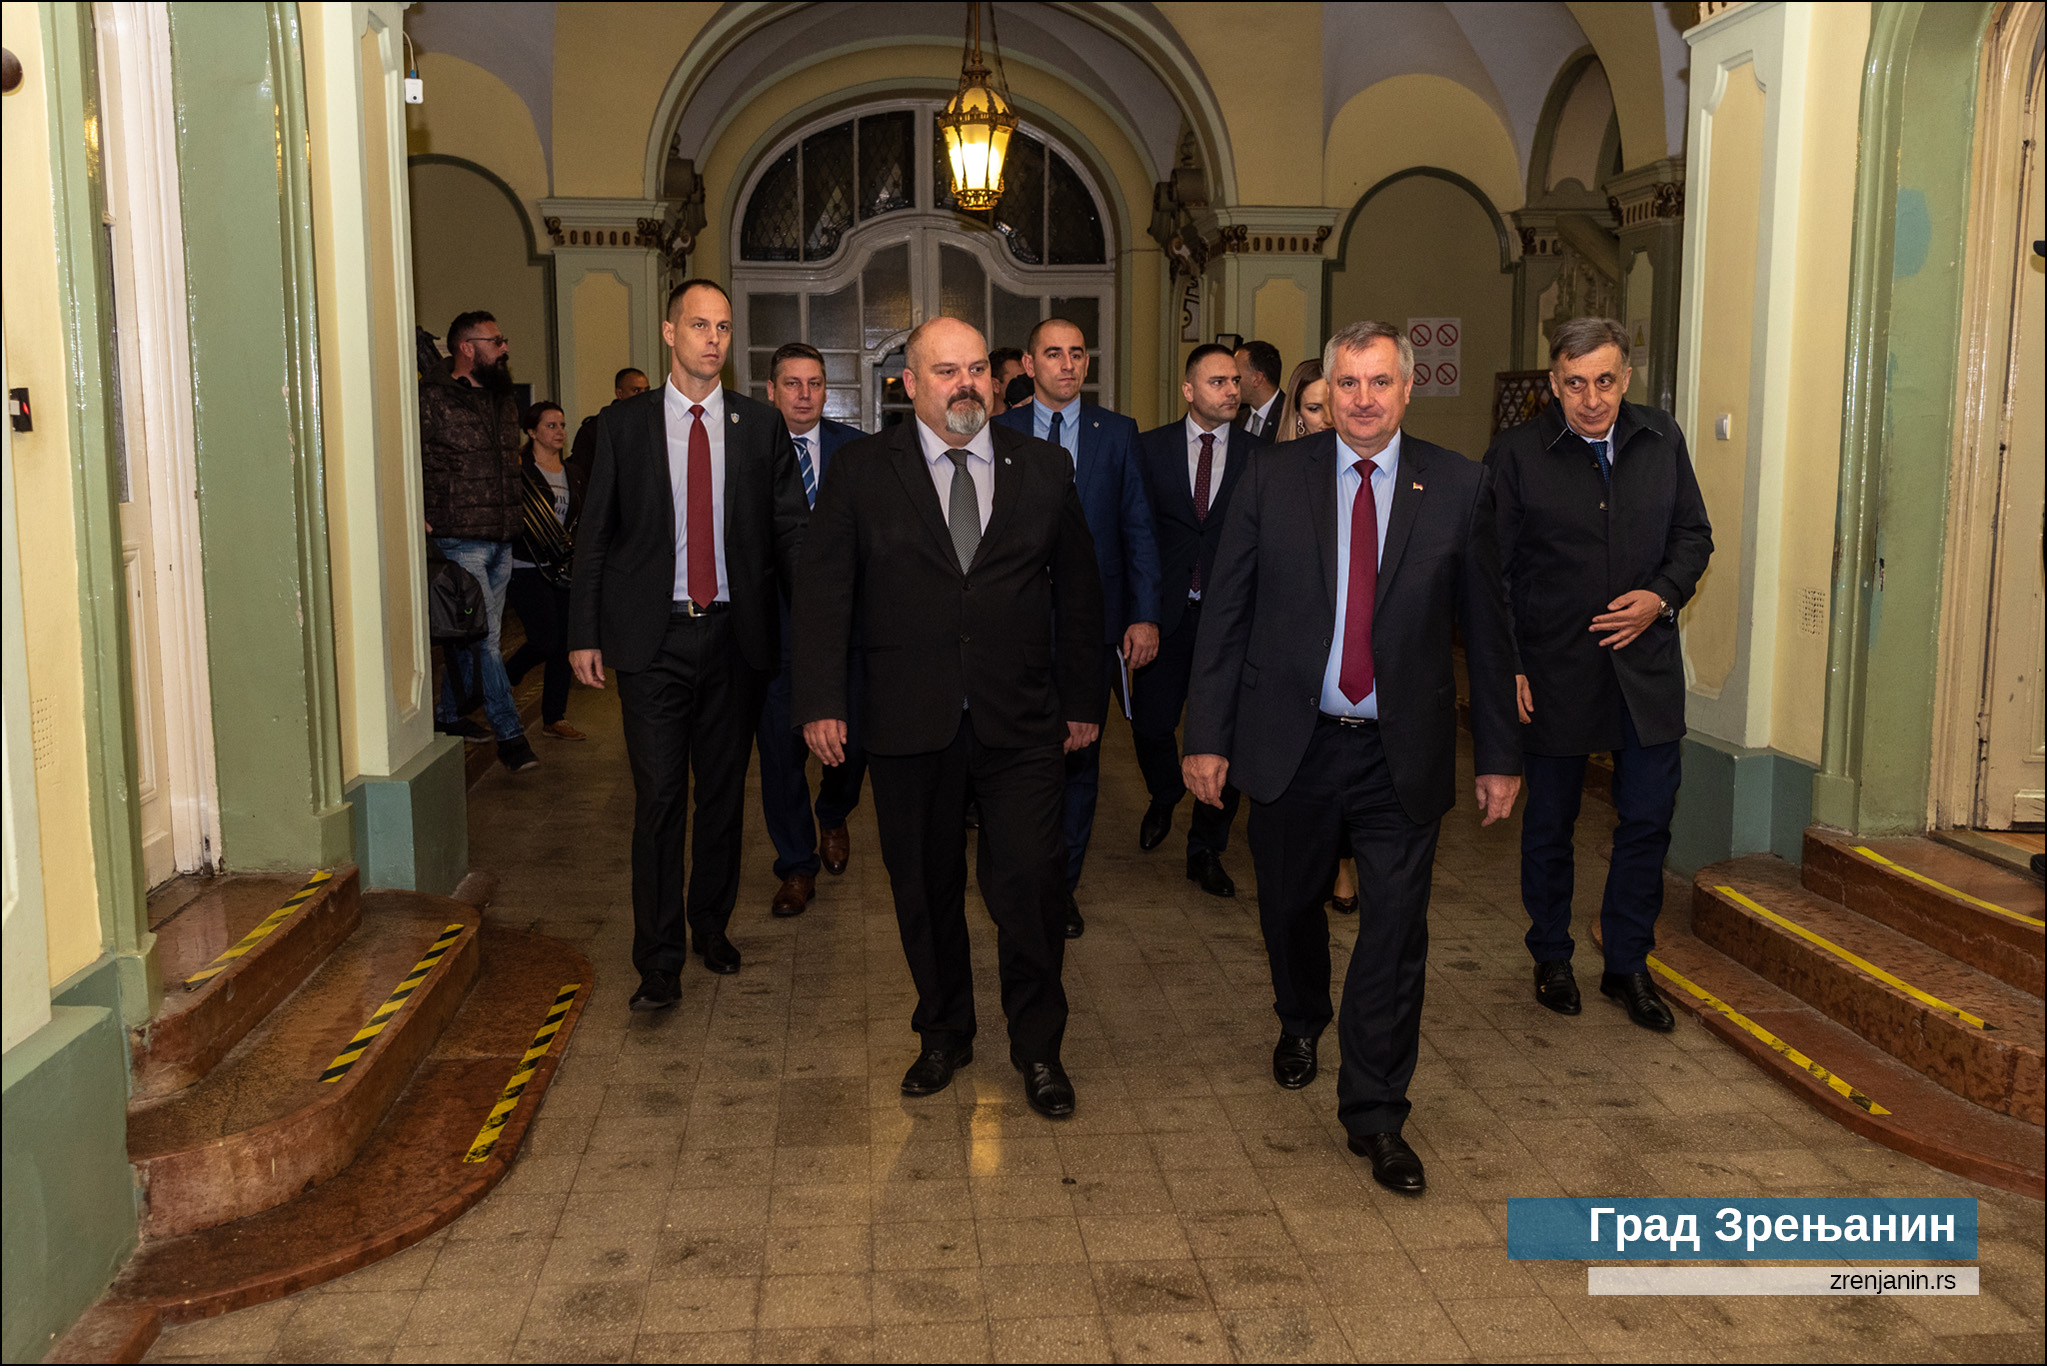 Predsednik Vlade Republike Srpske u poseti Zrenjaninu